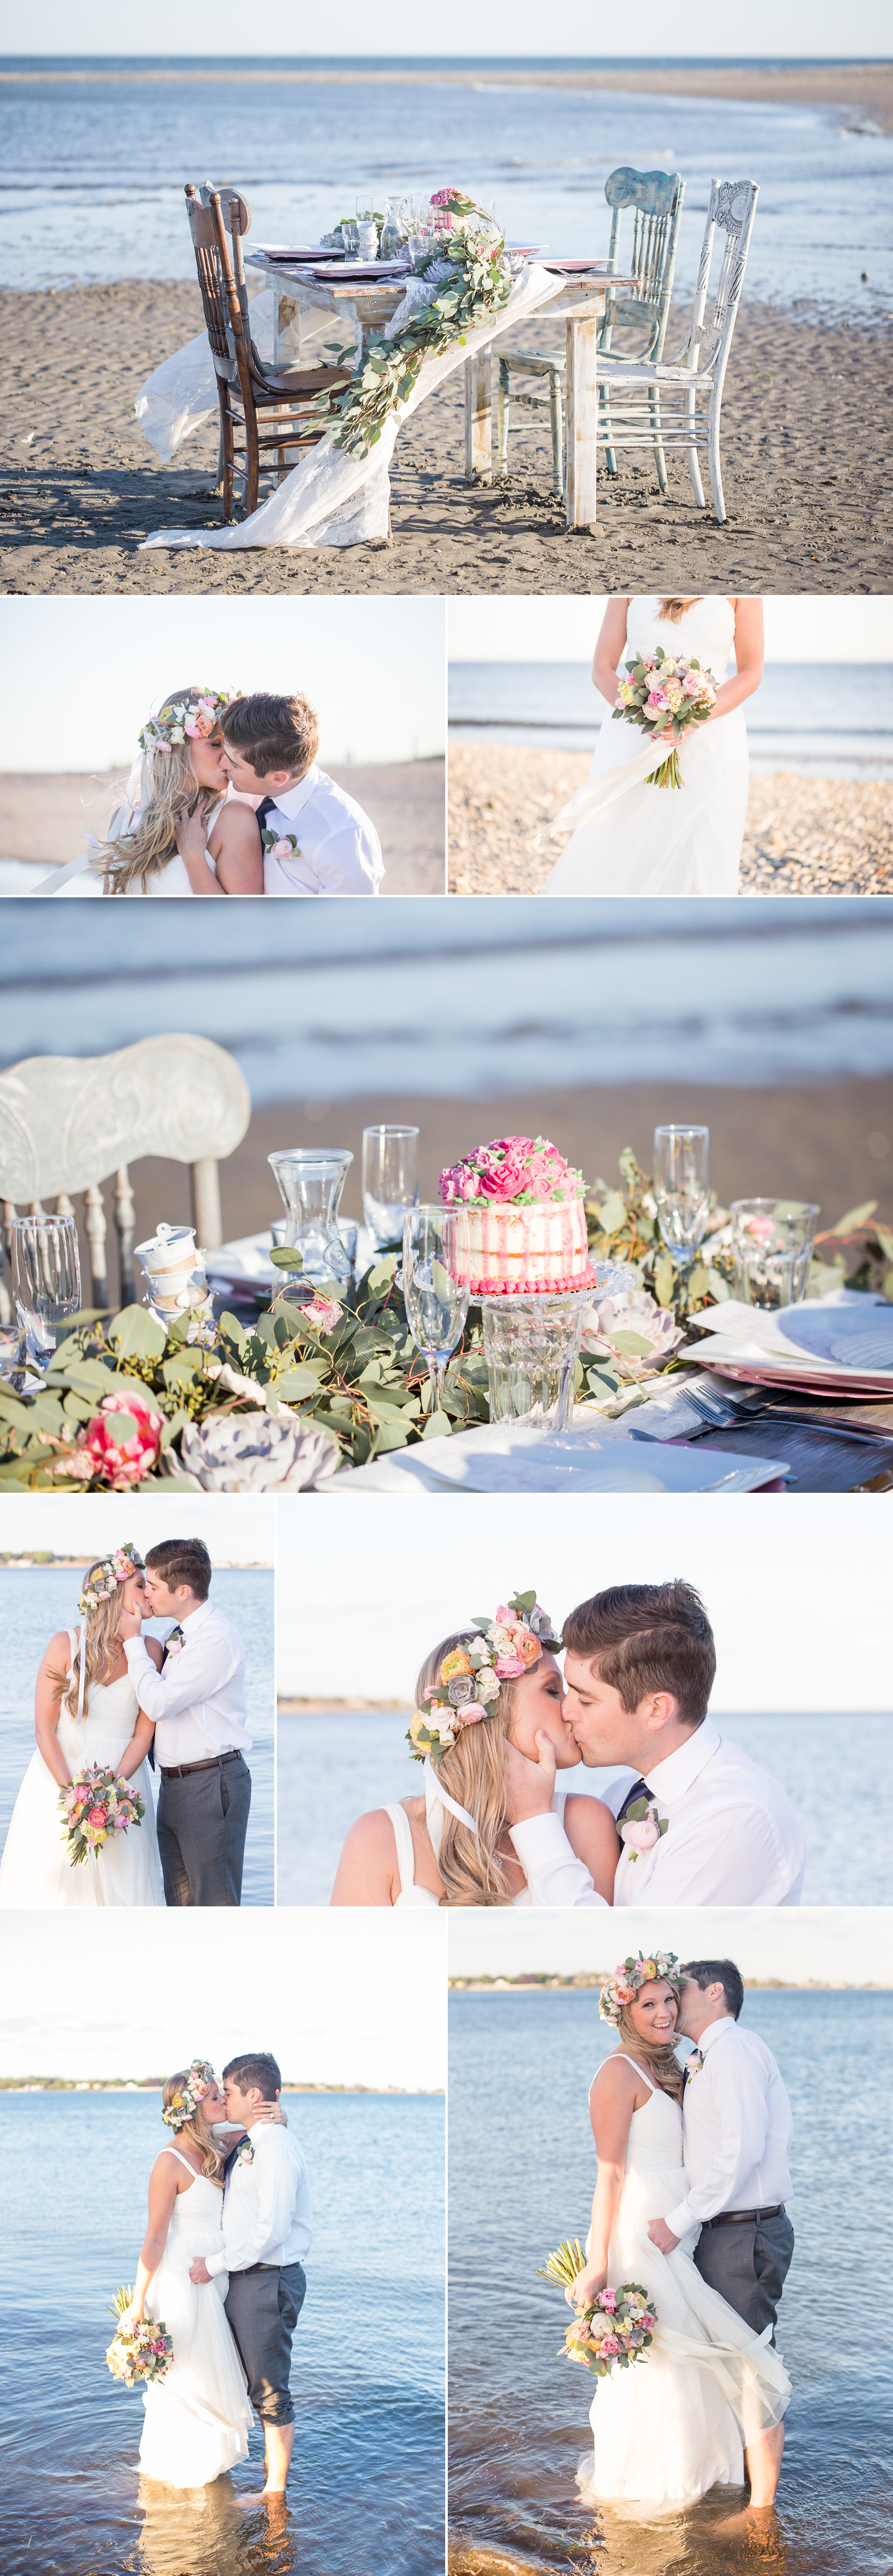 Sunset Beach Wedding Inspiration on Glamour & Grace | Shaina Lee Photography | CT, NYC + Destination Wedding + Engagement Photographer